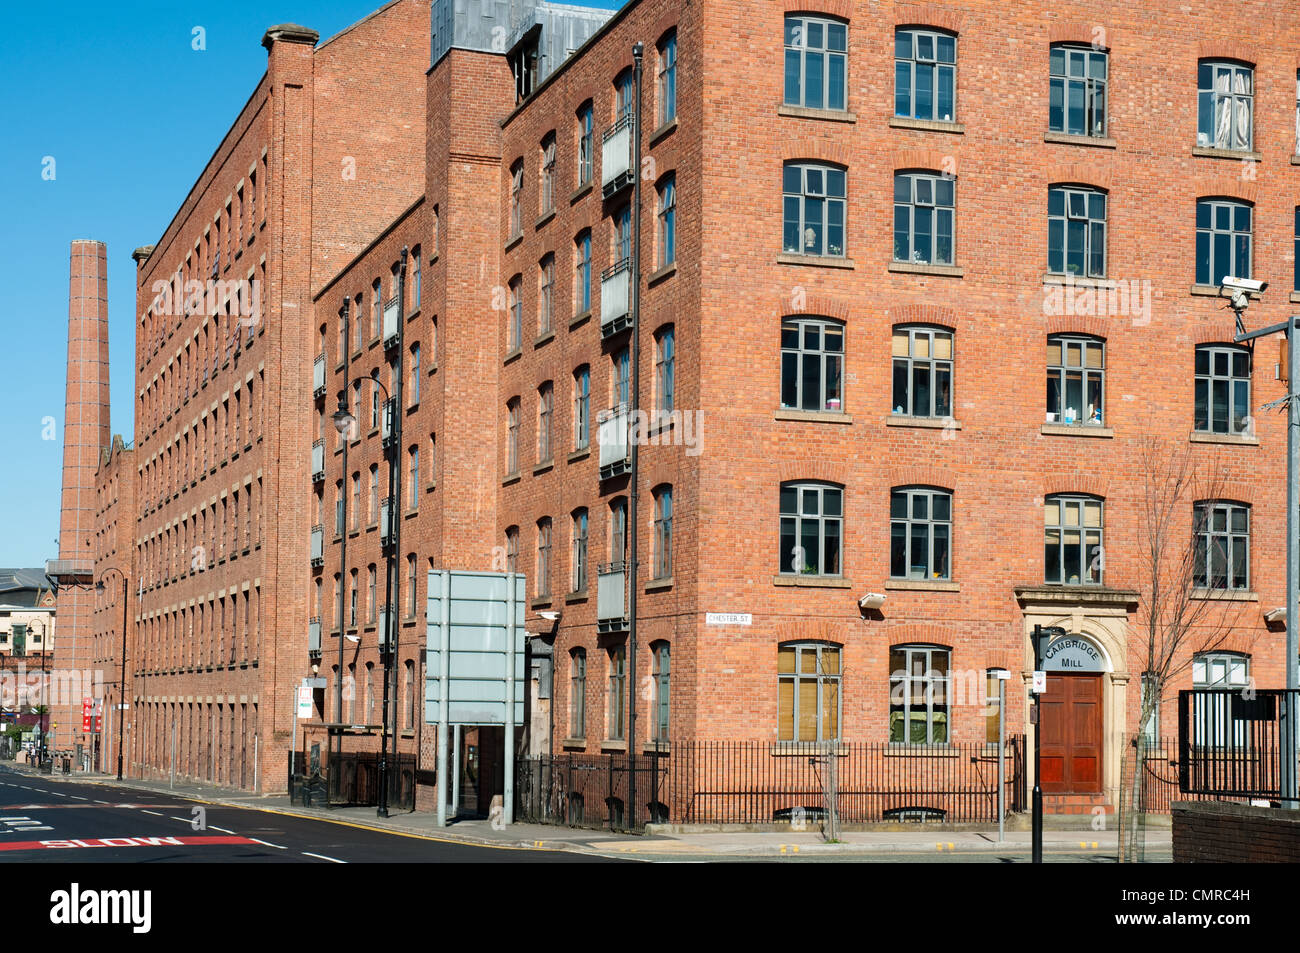 L'usine de Cambridge, Manchester.Ancien moulin transformé aujourd'hui en appartements. Banque D'Images